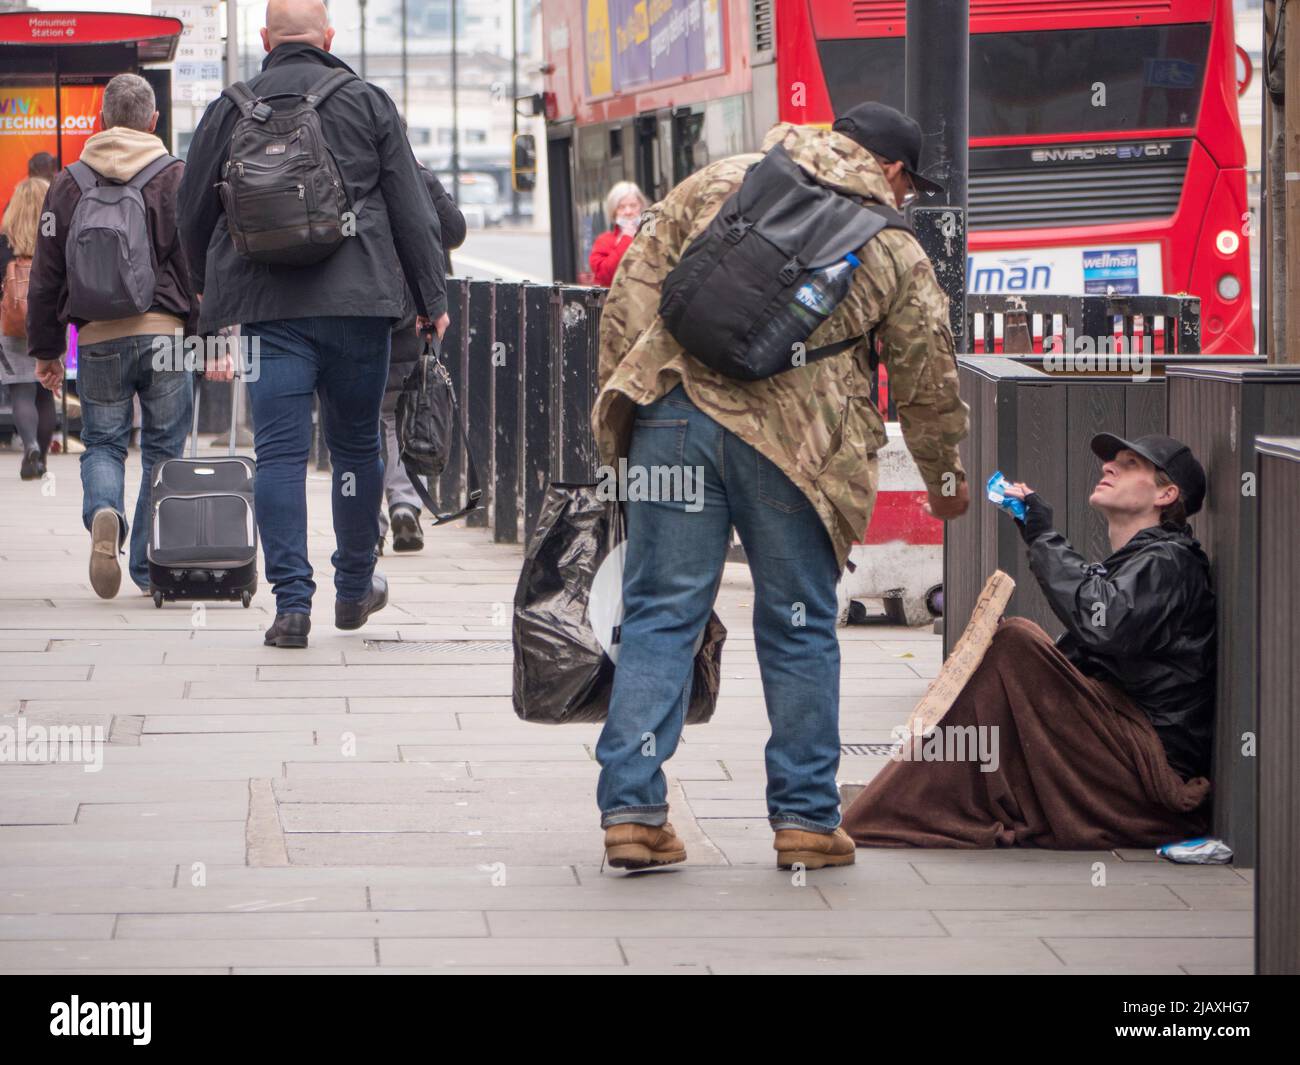 Armut in London, Mitglied der Öffentlichkeit, die sich beugte, um einem Bettler auf der London Bridge mit Decke und Schild Nahrung zu geben Stockfoto